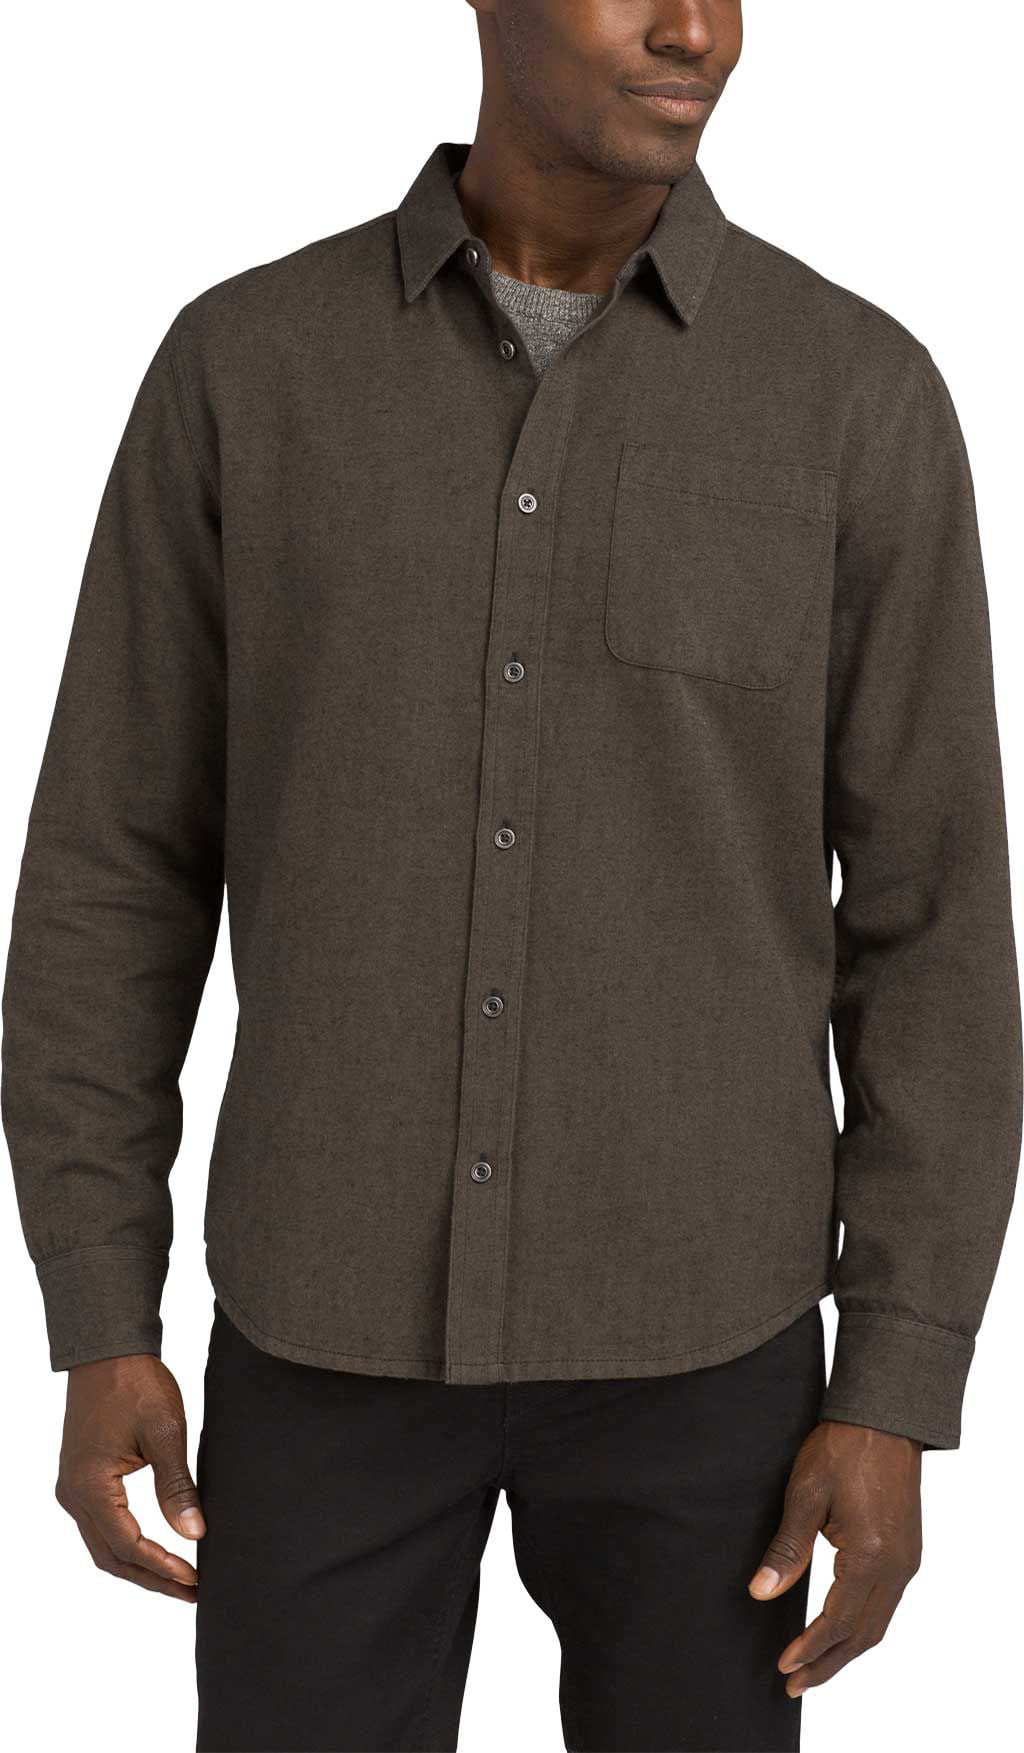 prAna Men's Woodman Lightweight Flannel Long Sleeve Shirt - Walmart.com